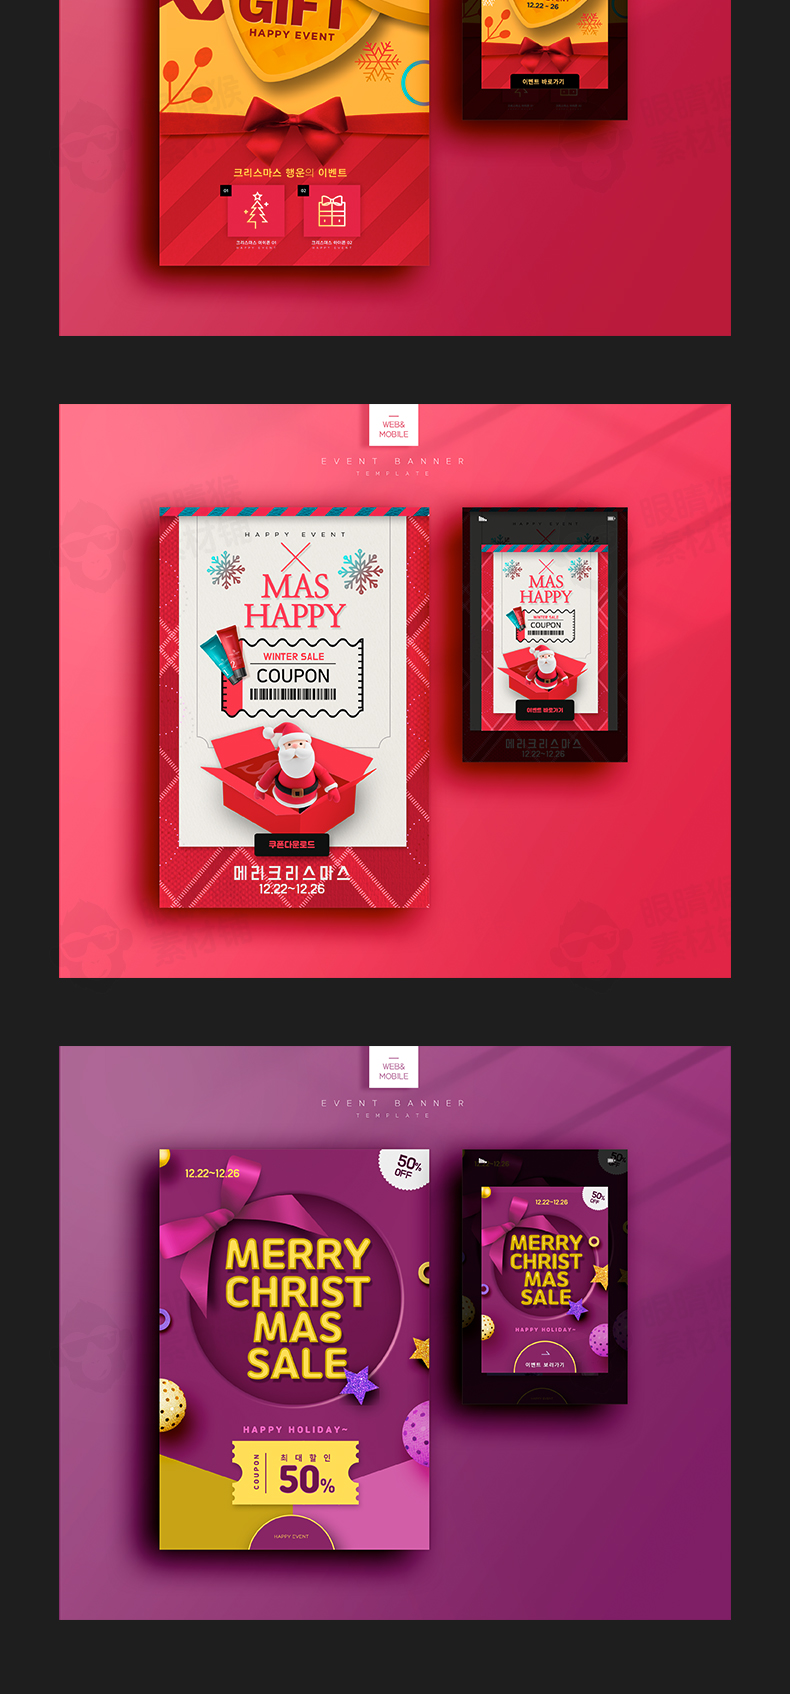 10款2020圣诞节海报模板宣传单商场活动促销背景图psd设计素材-海报素材-到位啦UI